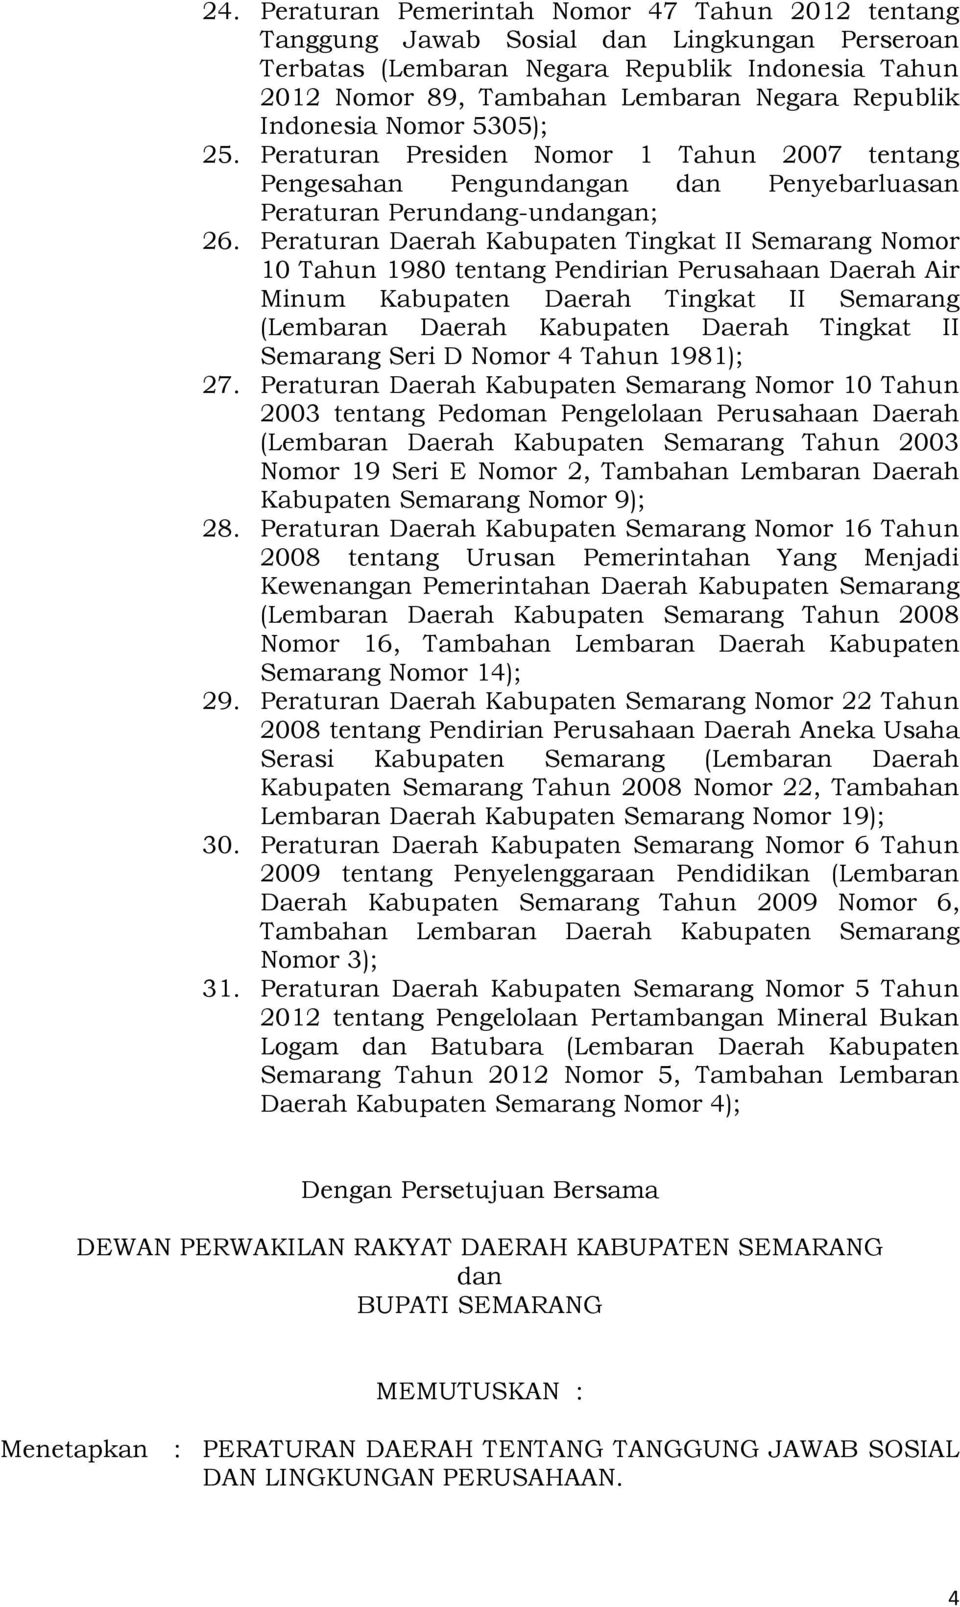 Peraturan Daerah Kabupaten Tingkat II Semarang Nomor 10 Tahun 1980 tentang Pendirian Perusahaan Daerah Air Minum Kabupaten Daerah Tingkat II Semarang (Lembaran Daerah Kabupaten Daerah Tingkat II